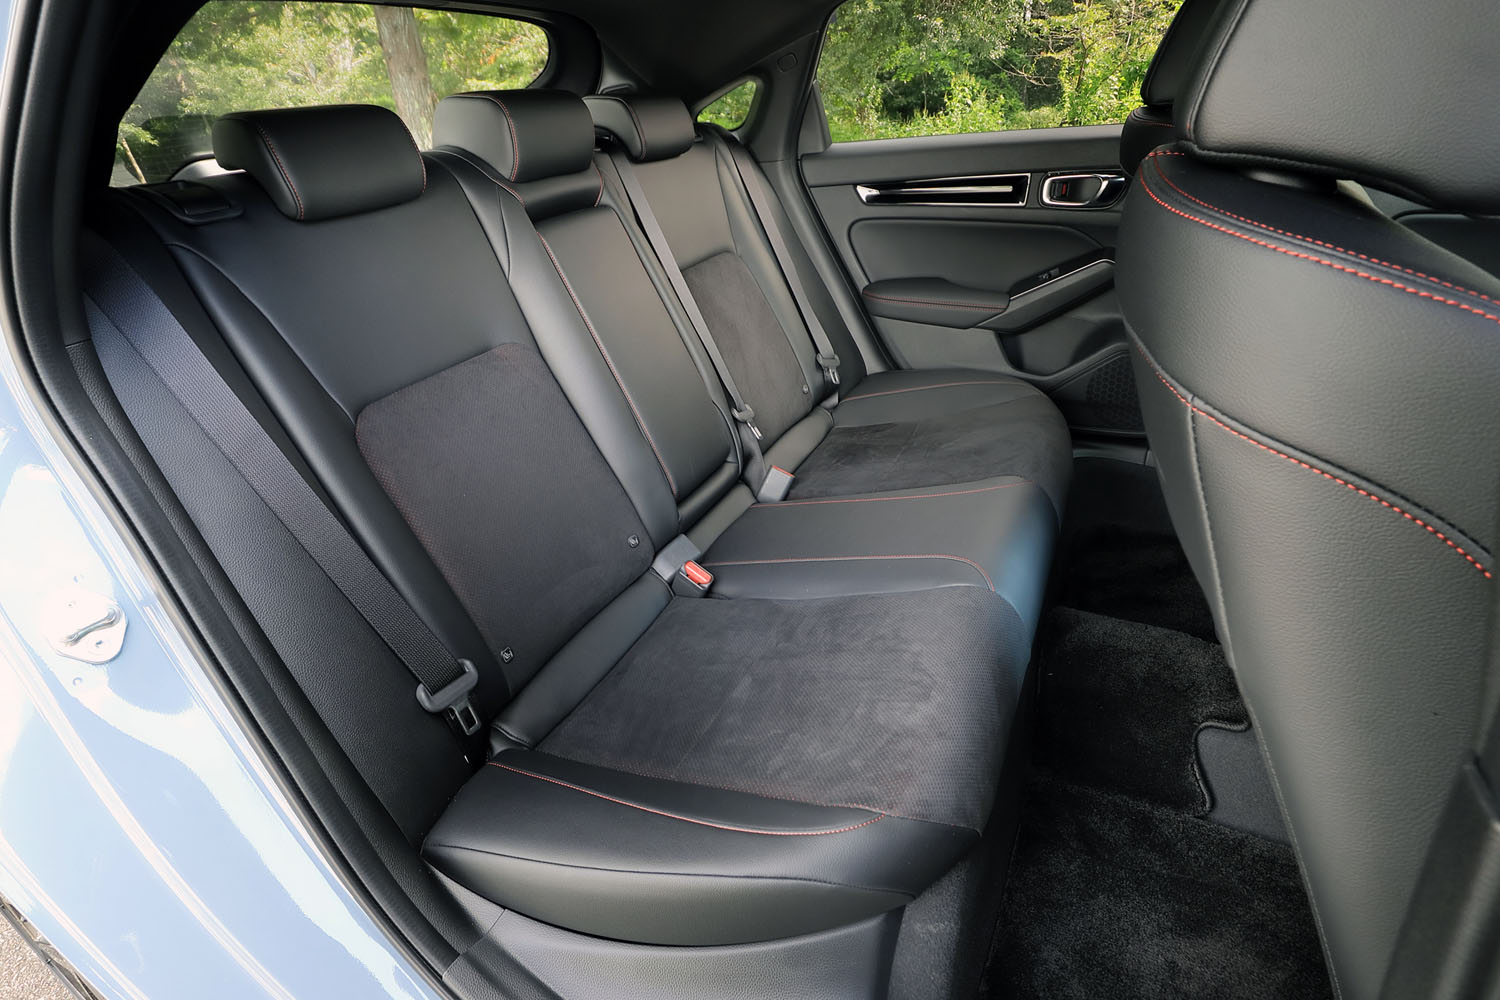 新型「シビック」では、ホイールベースの延長により前後席間距離が従来モデルより35mm拡大。後席の居住性が改善している。